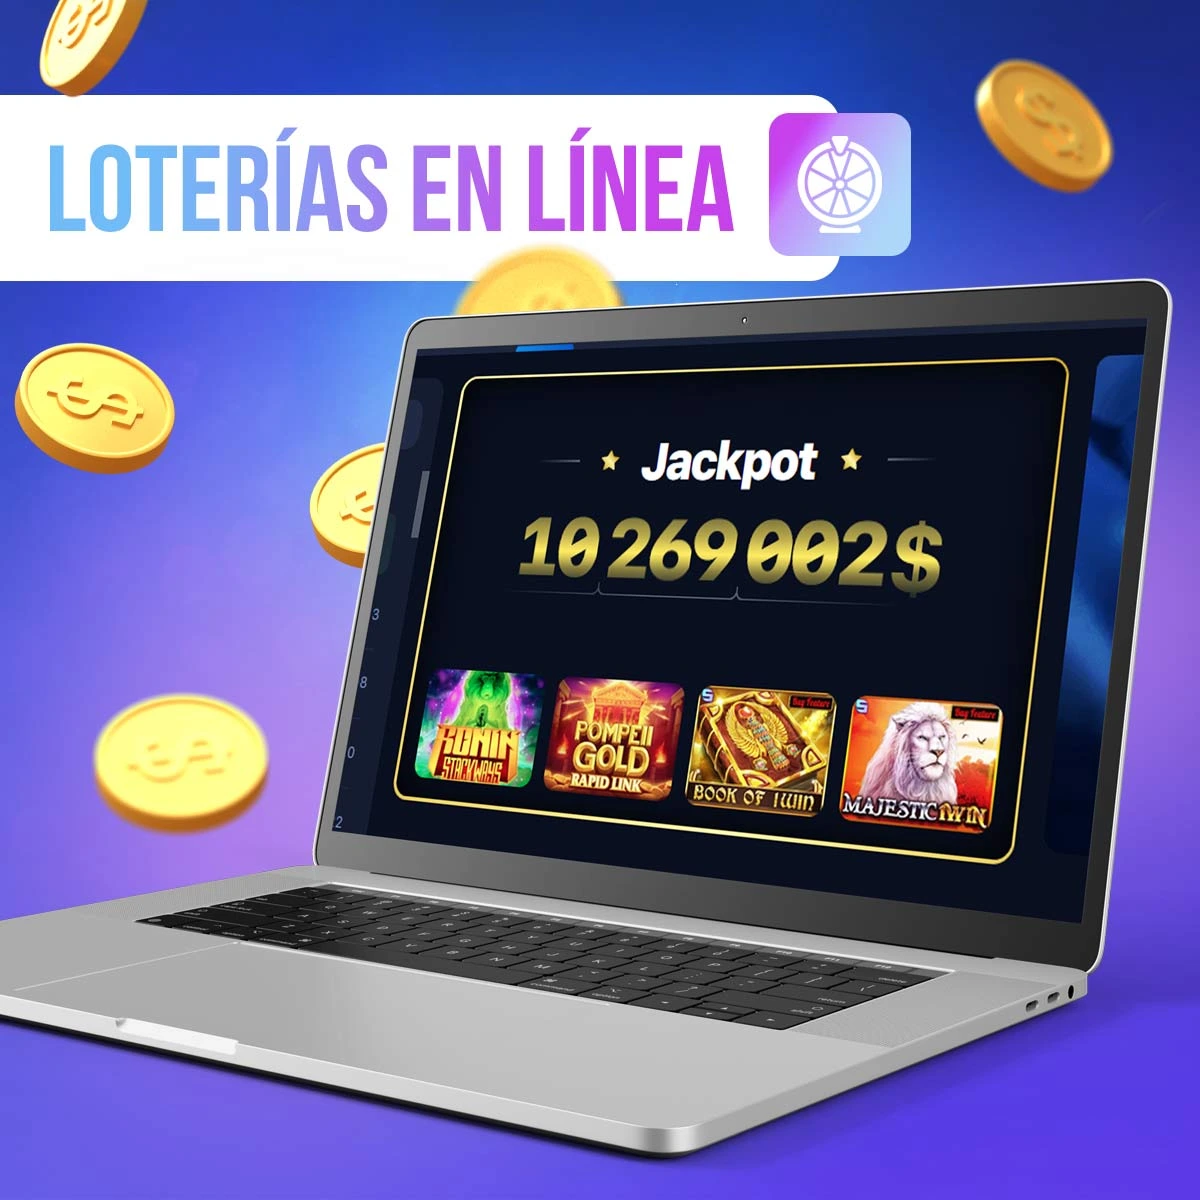 Loterías en línea reseña en la app móvil de 1win en México